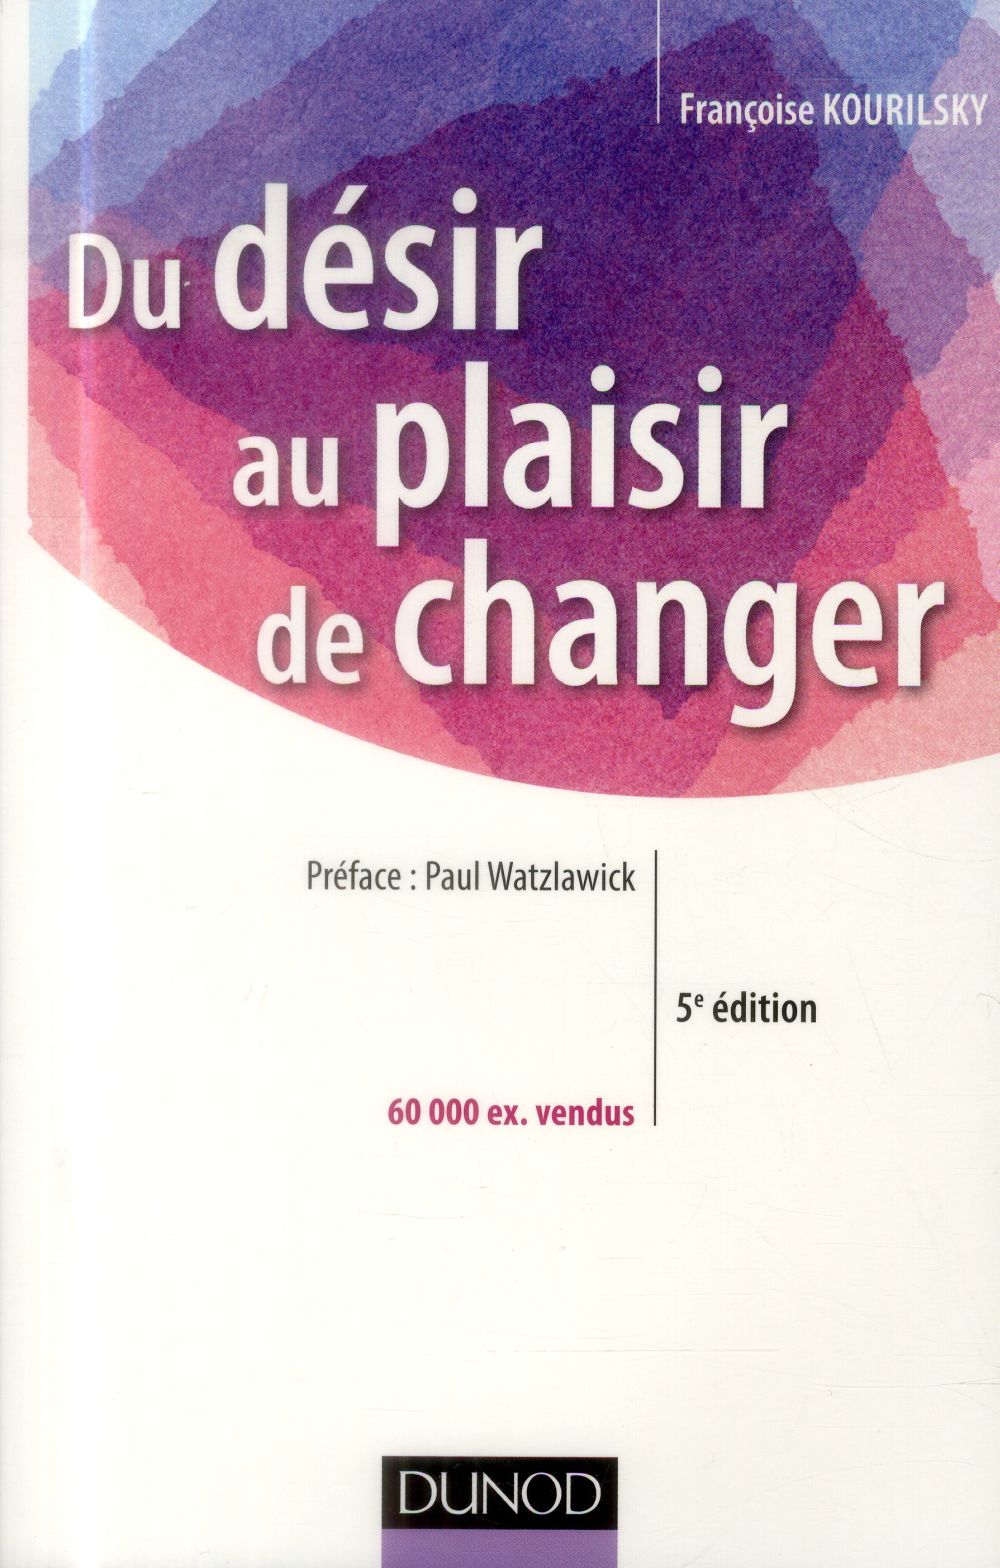 DU DESIR AU PLAISIR DE CHANGER - LE COACHING DU CHANGEMENT